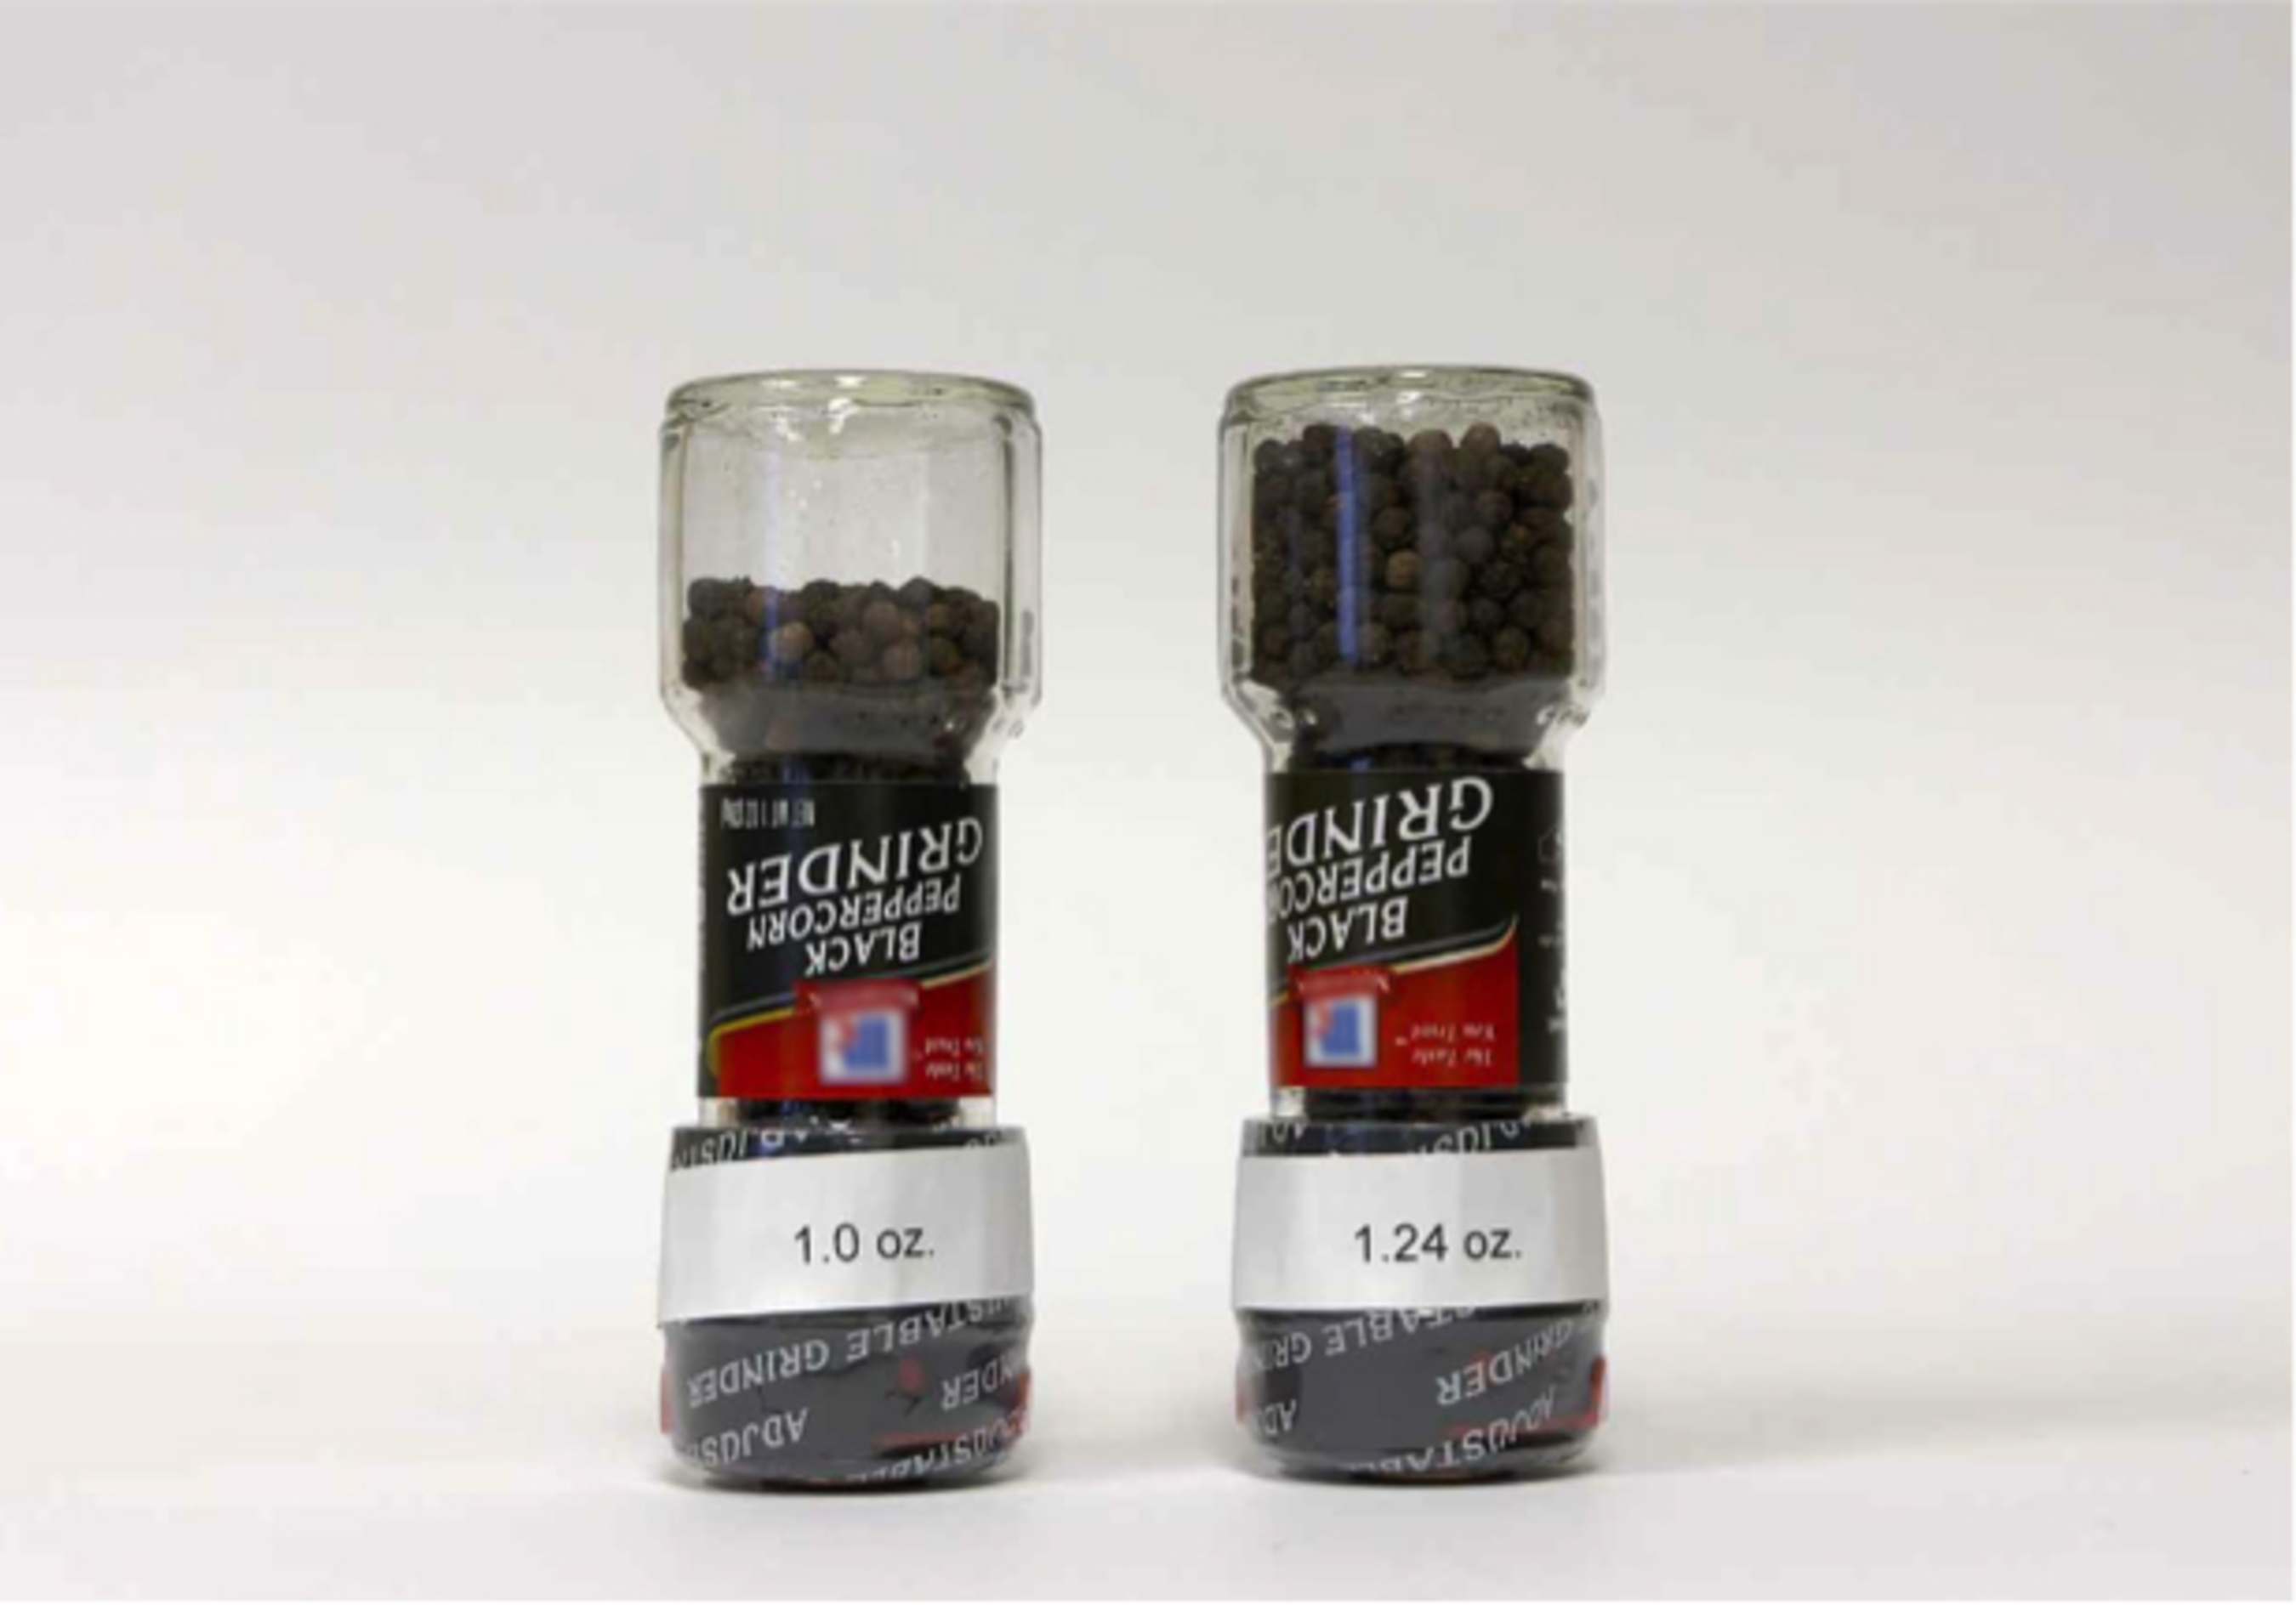 Mccormick Grinder Black Peppercorn, Adjustable - 1 oz